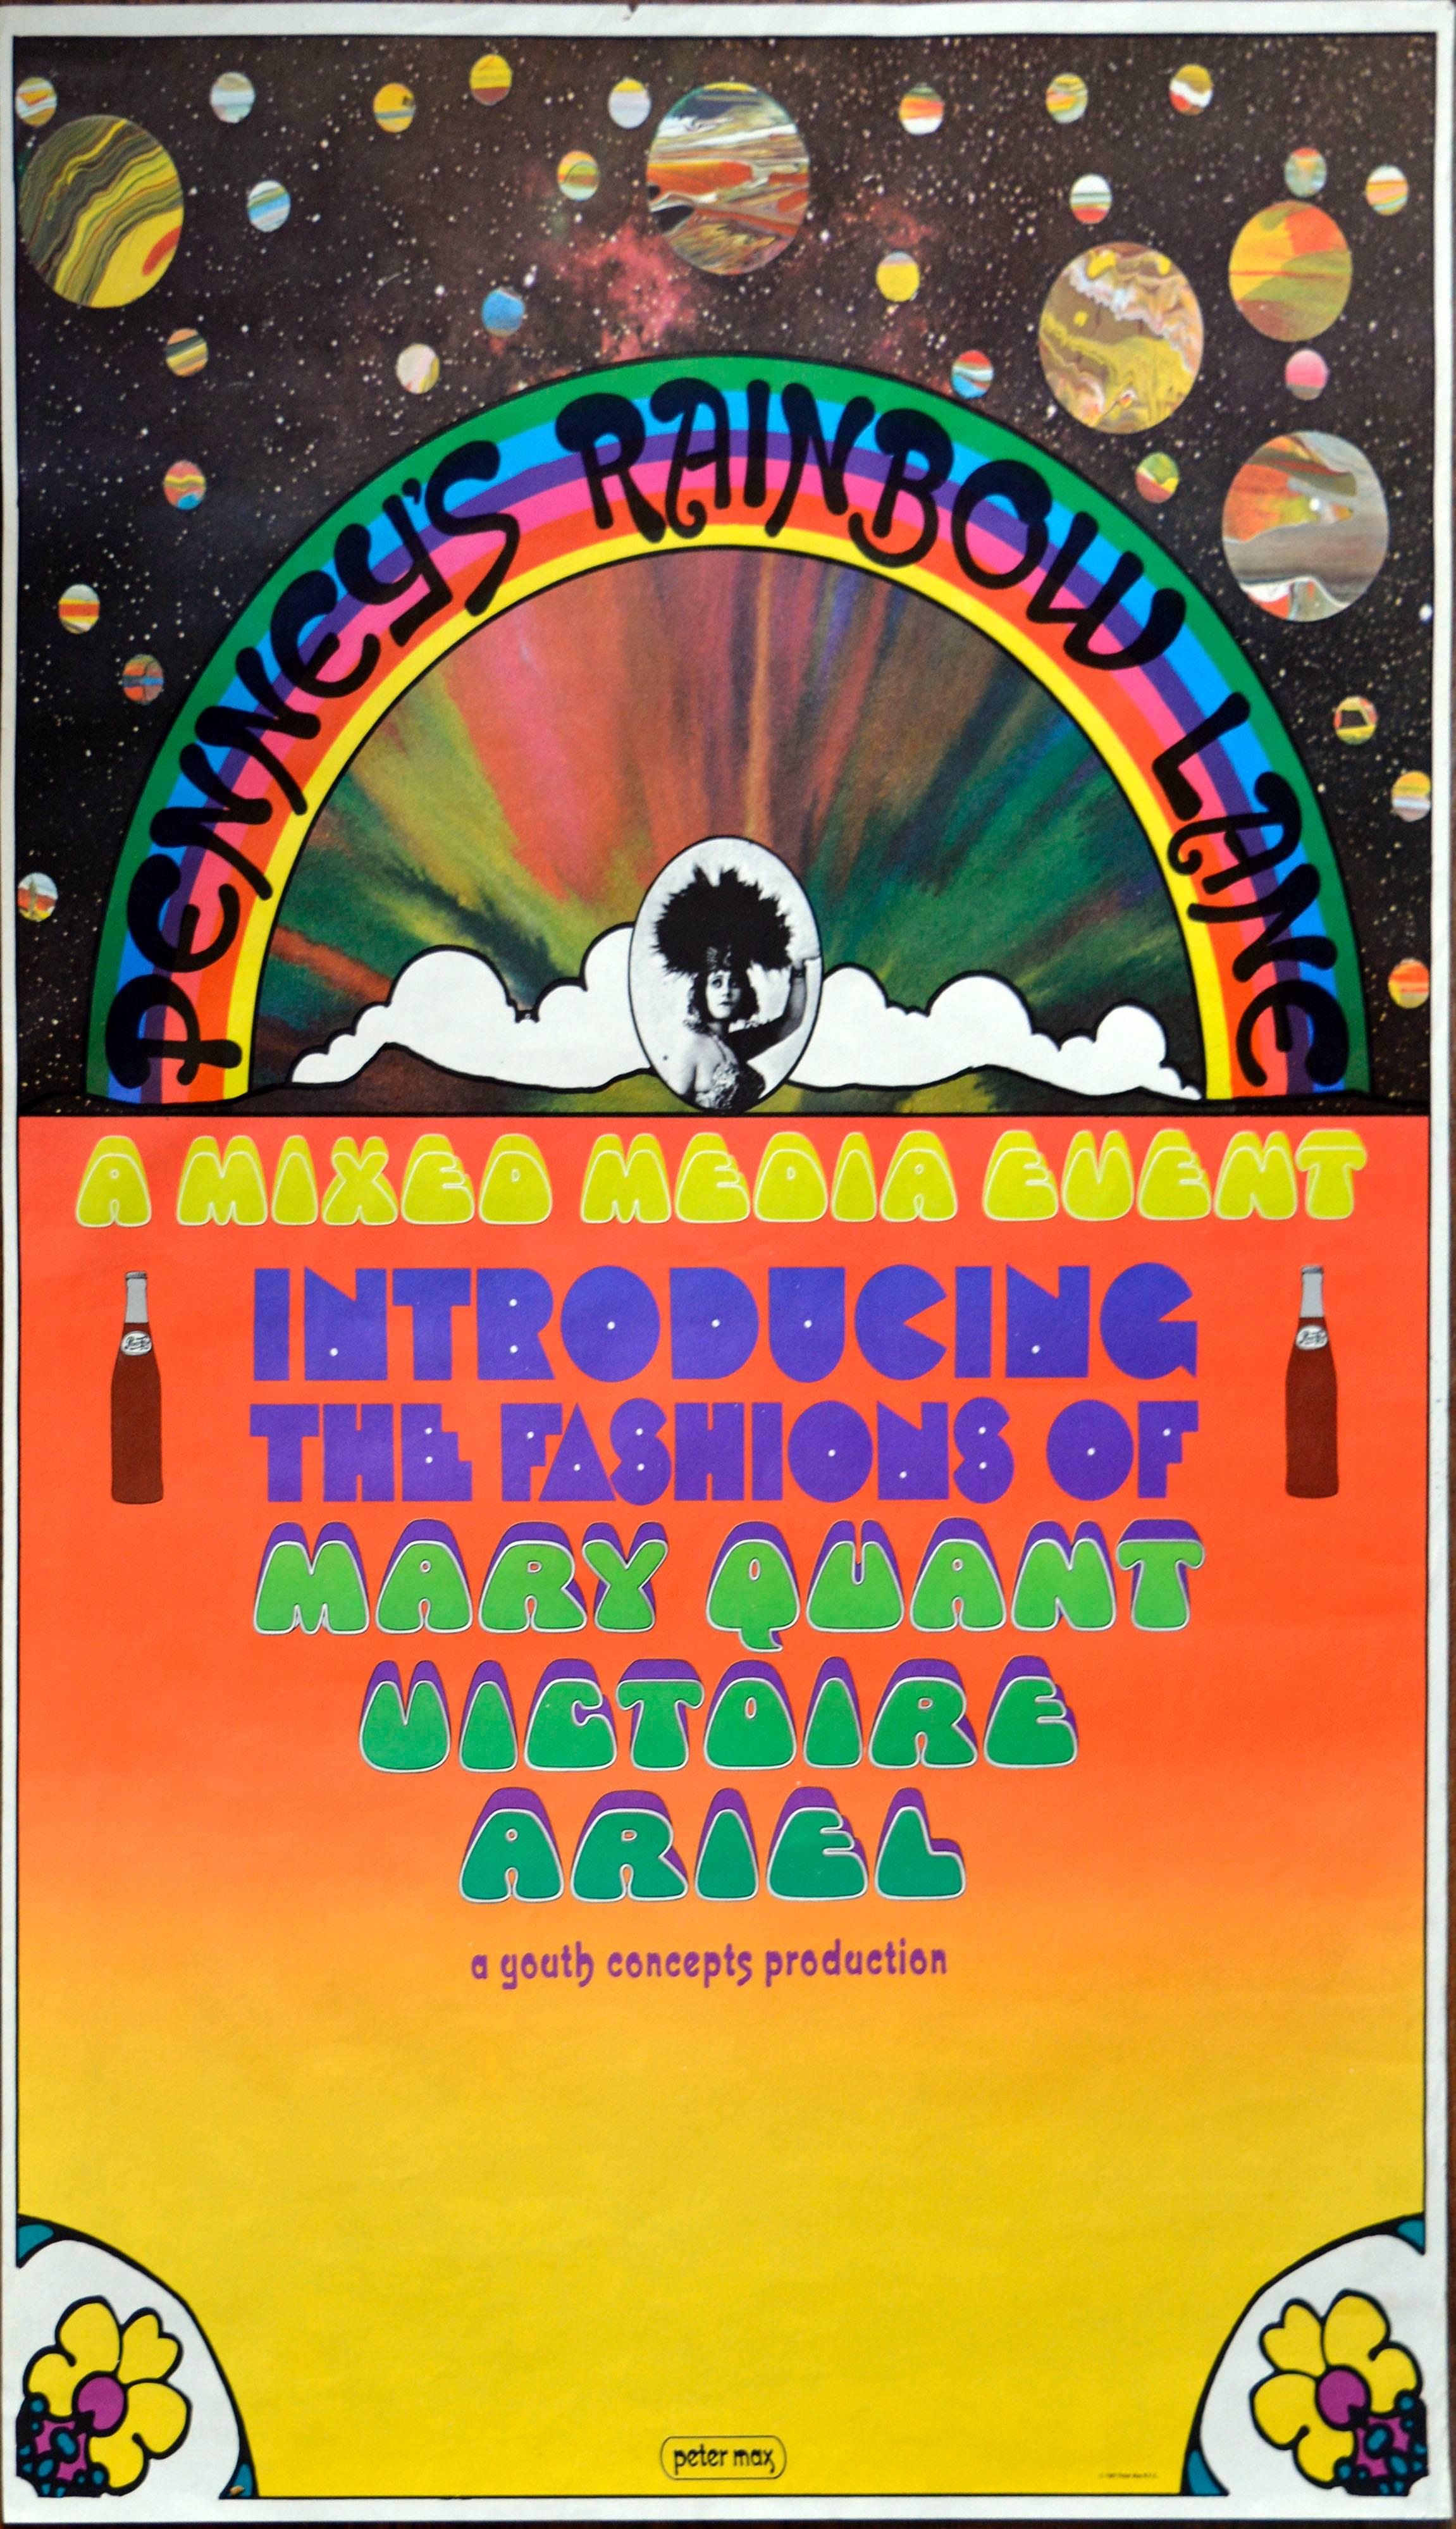 Penny's Rainbow Lane - abstraktes psychedelisches Pop-Art-Poster aus den 1960er Jahren 